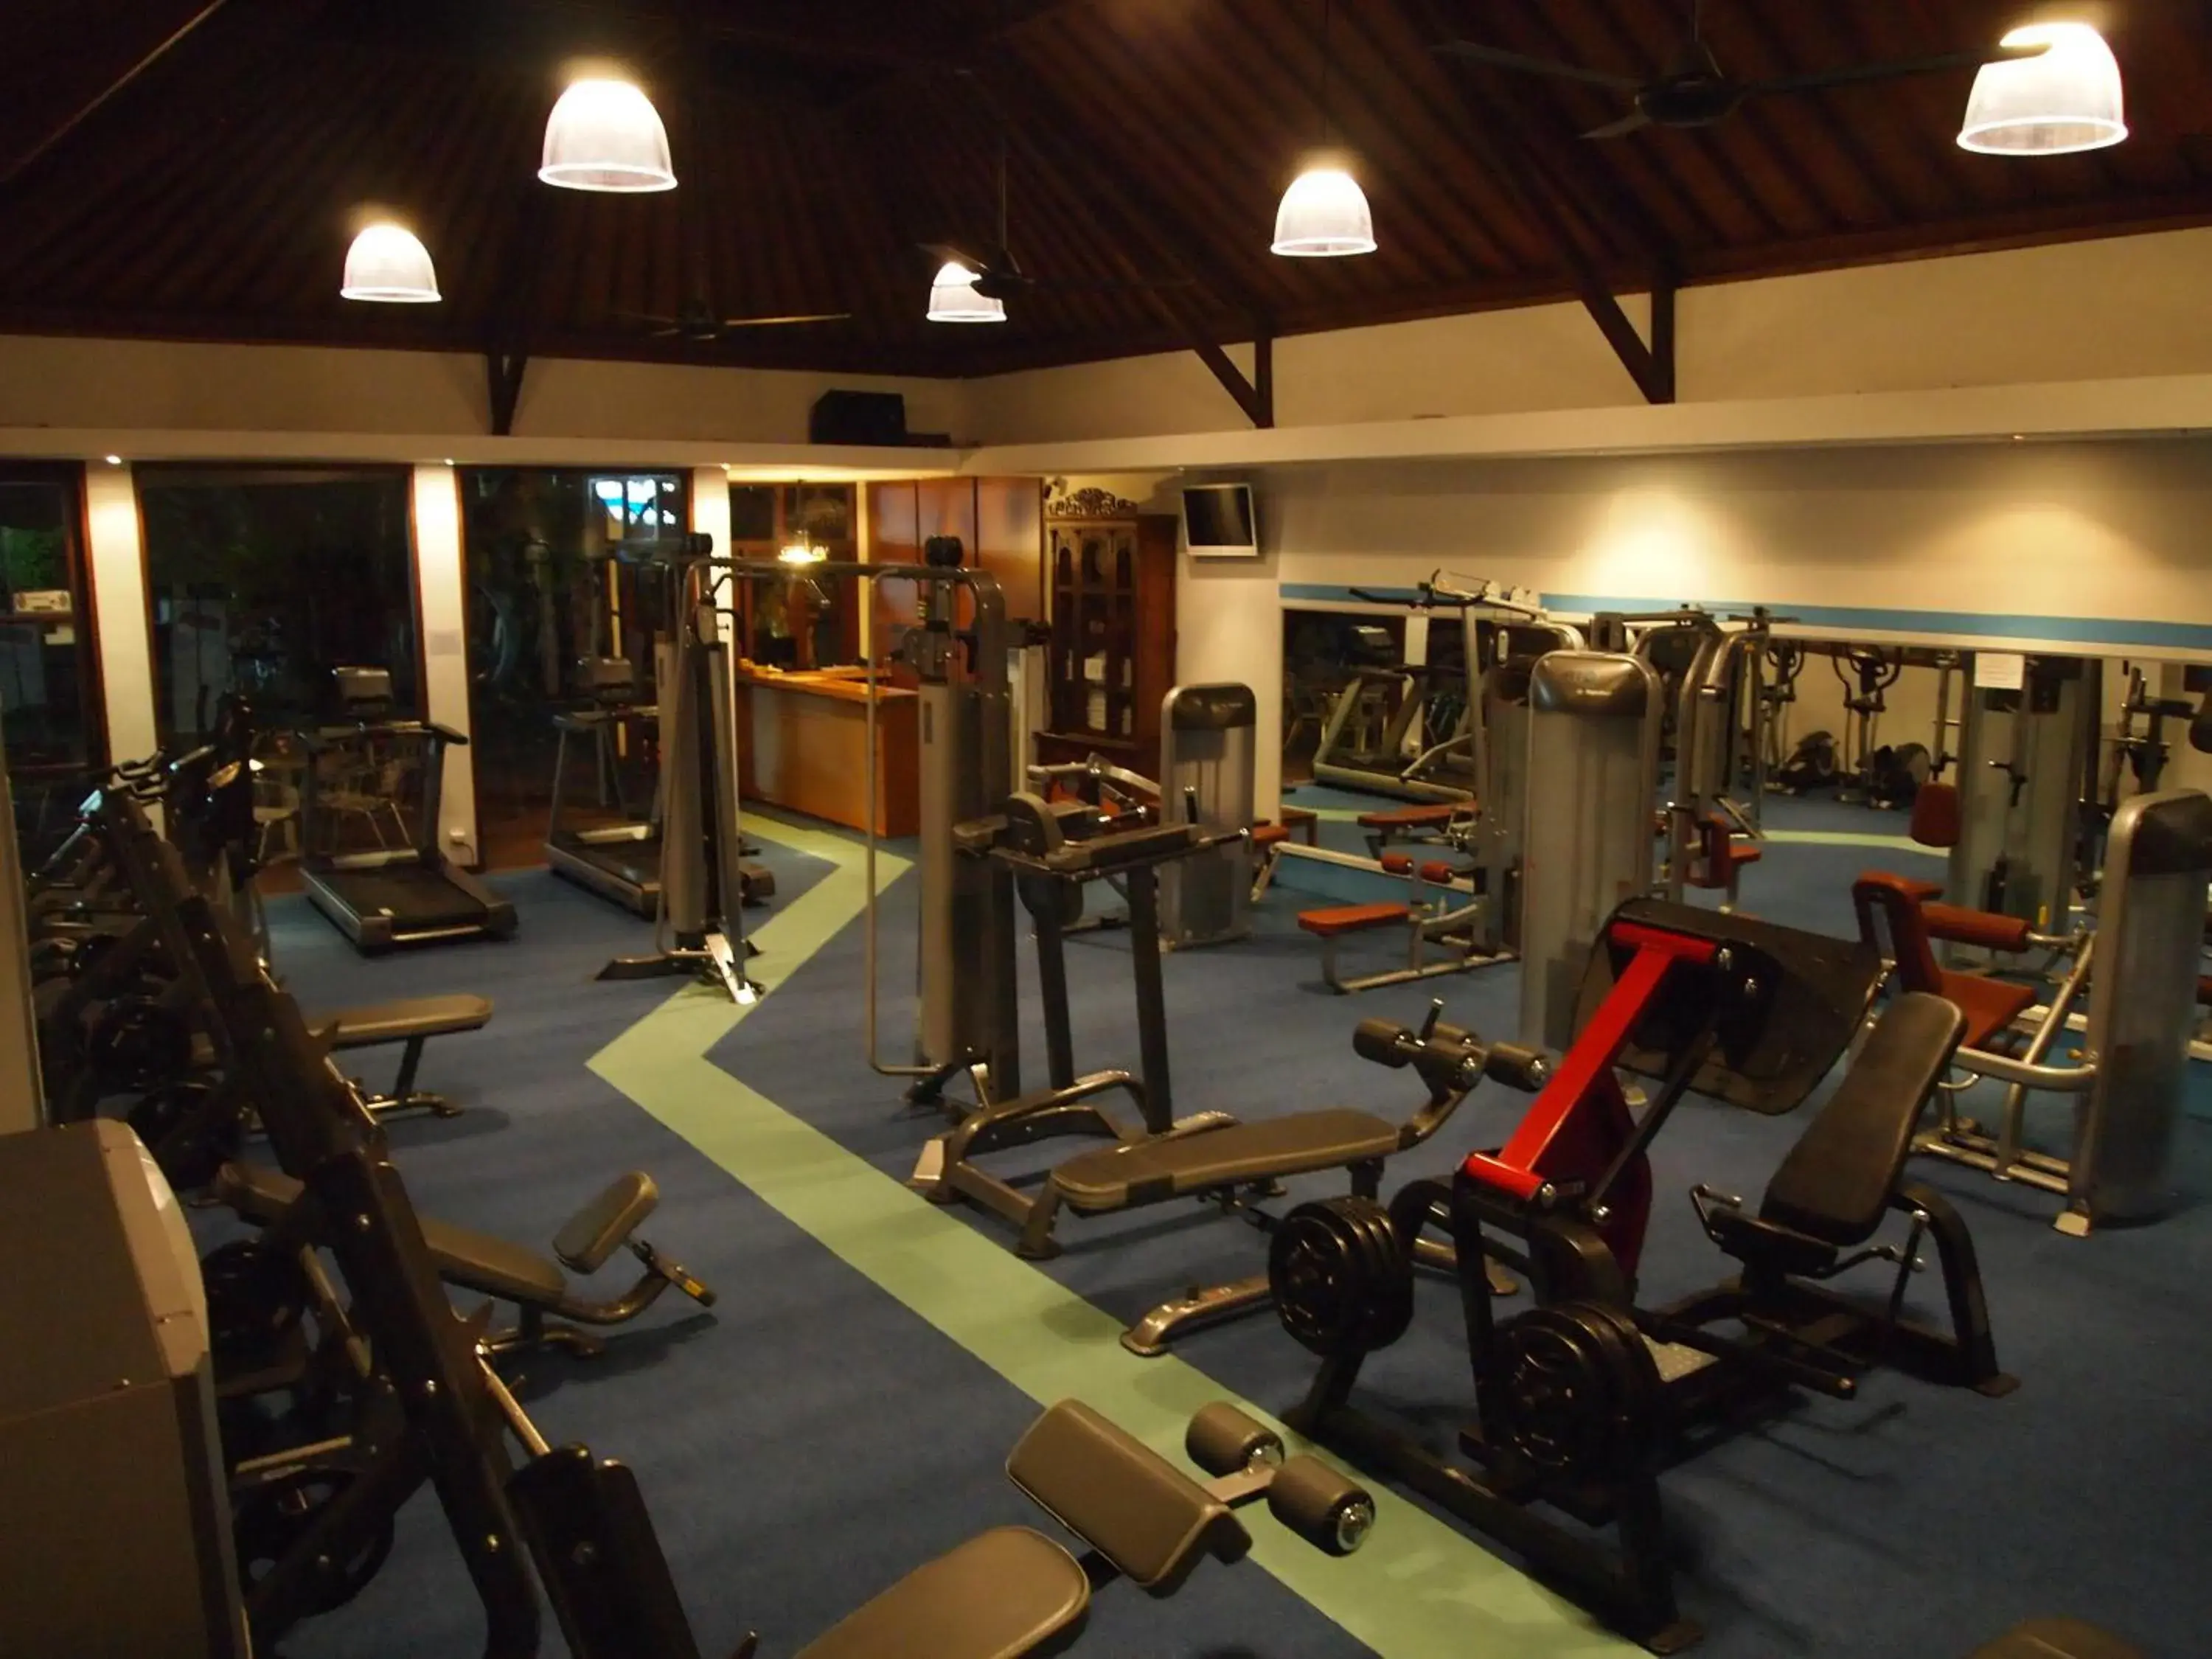 Fitness centre/facilities, Fitness Center/Facilities in Ajanta Villas